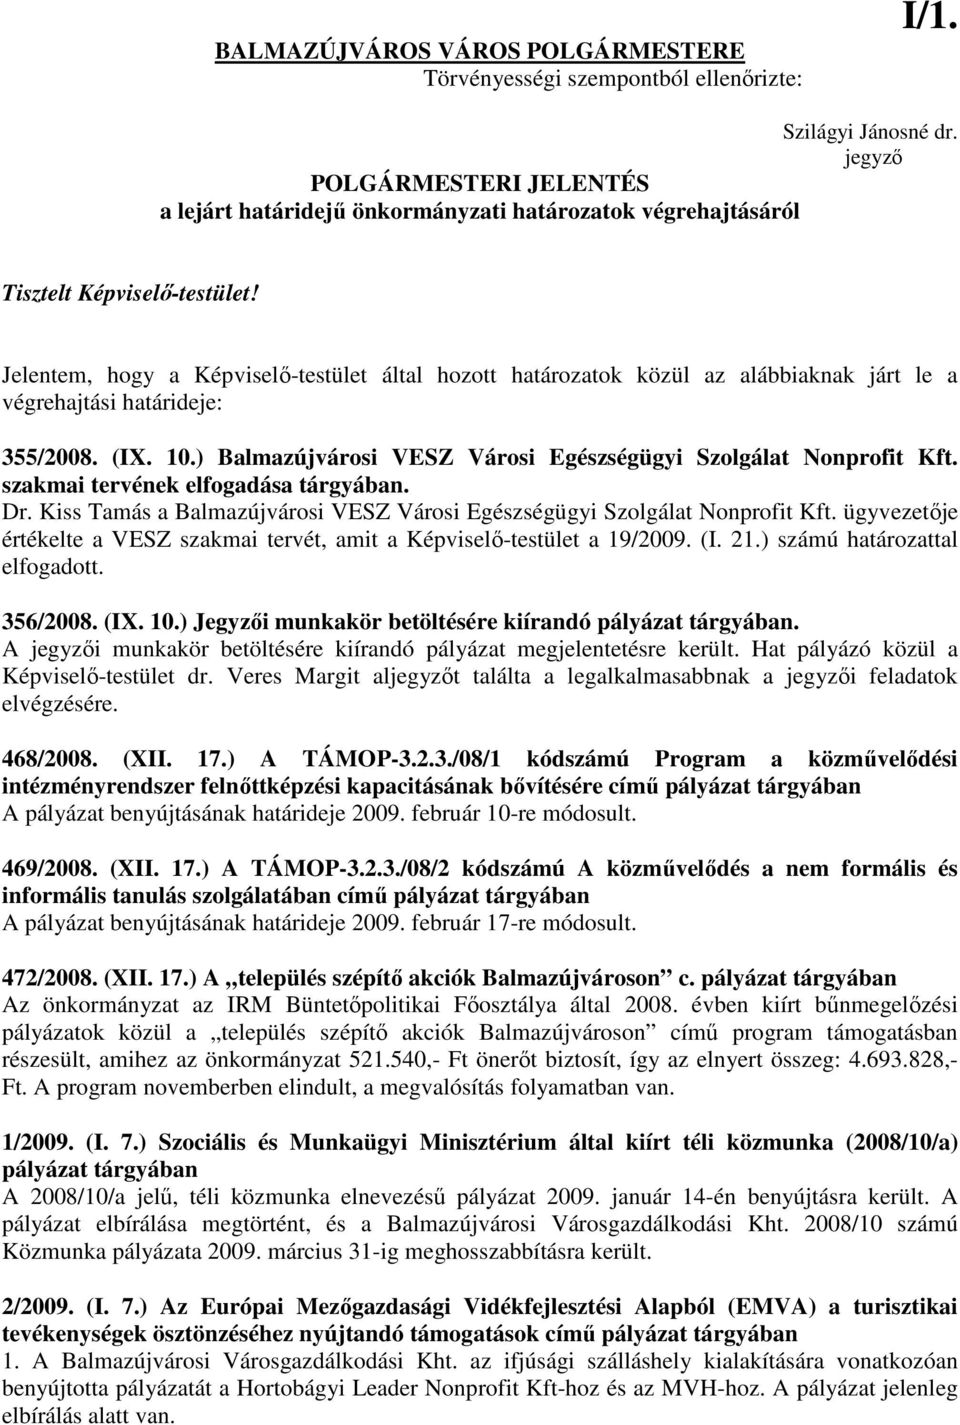 Jelentem, hogy a Képviselı-testület által hozott határozatok közül az alábbiaknak járt le a végrehajtási határideje: 355/28. (IX. 1.) Balmazújvárosi VESZ Városi Egészségügyi Szolgálat Nonprofit Kft.